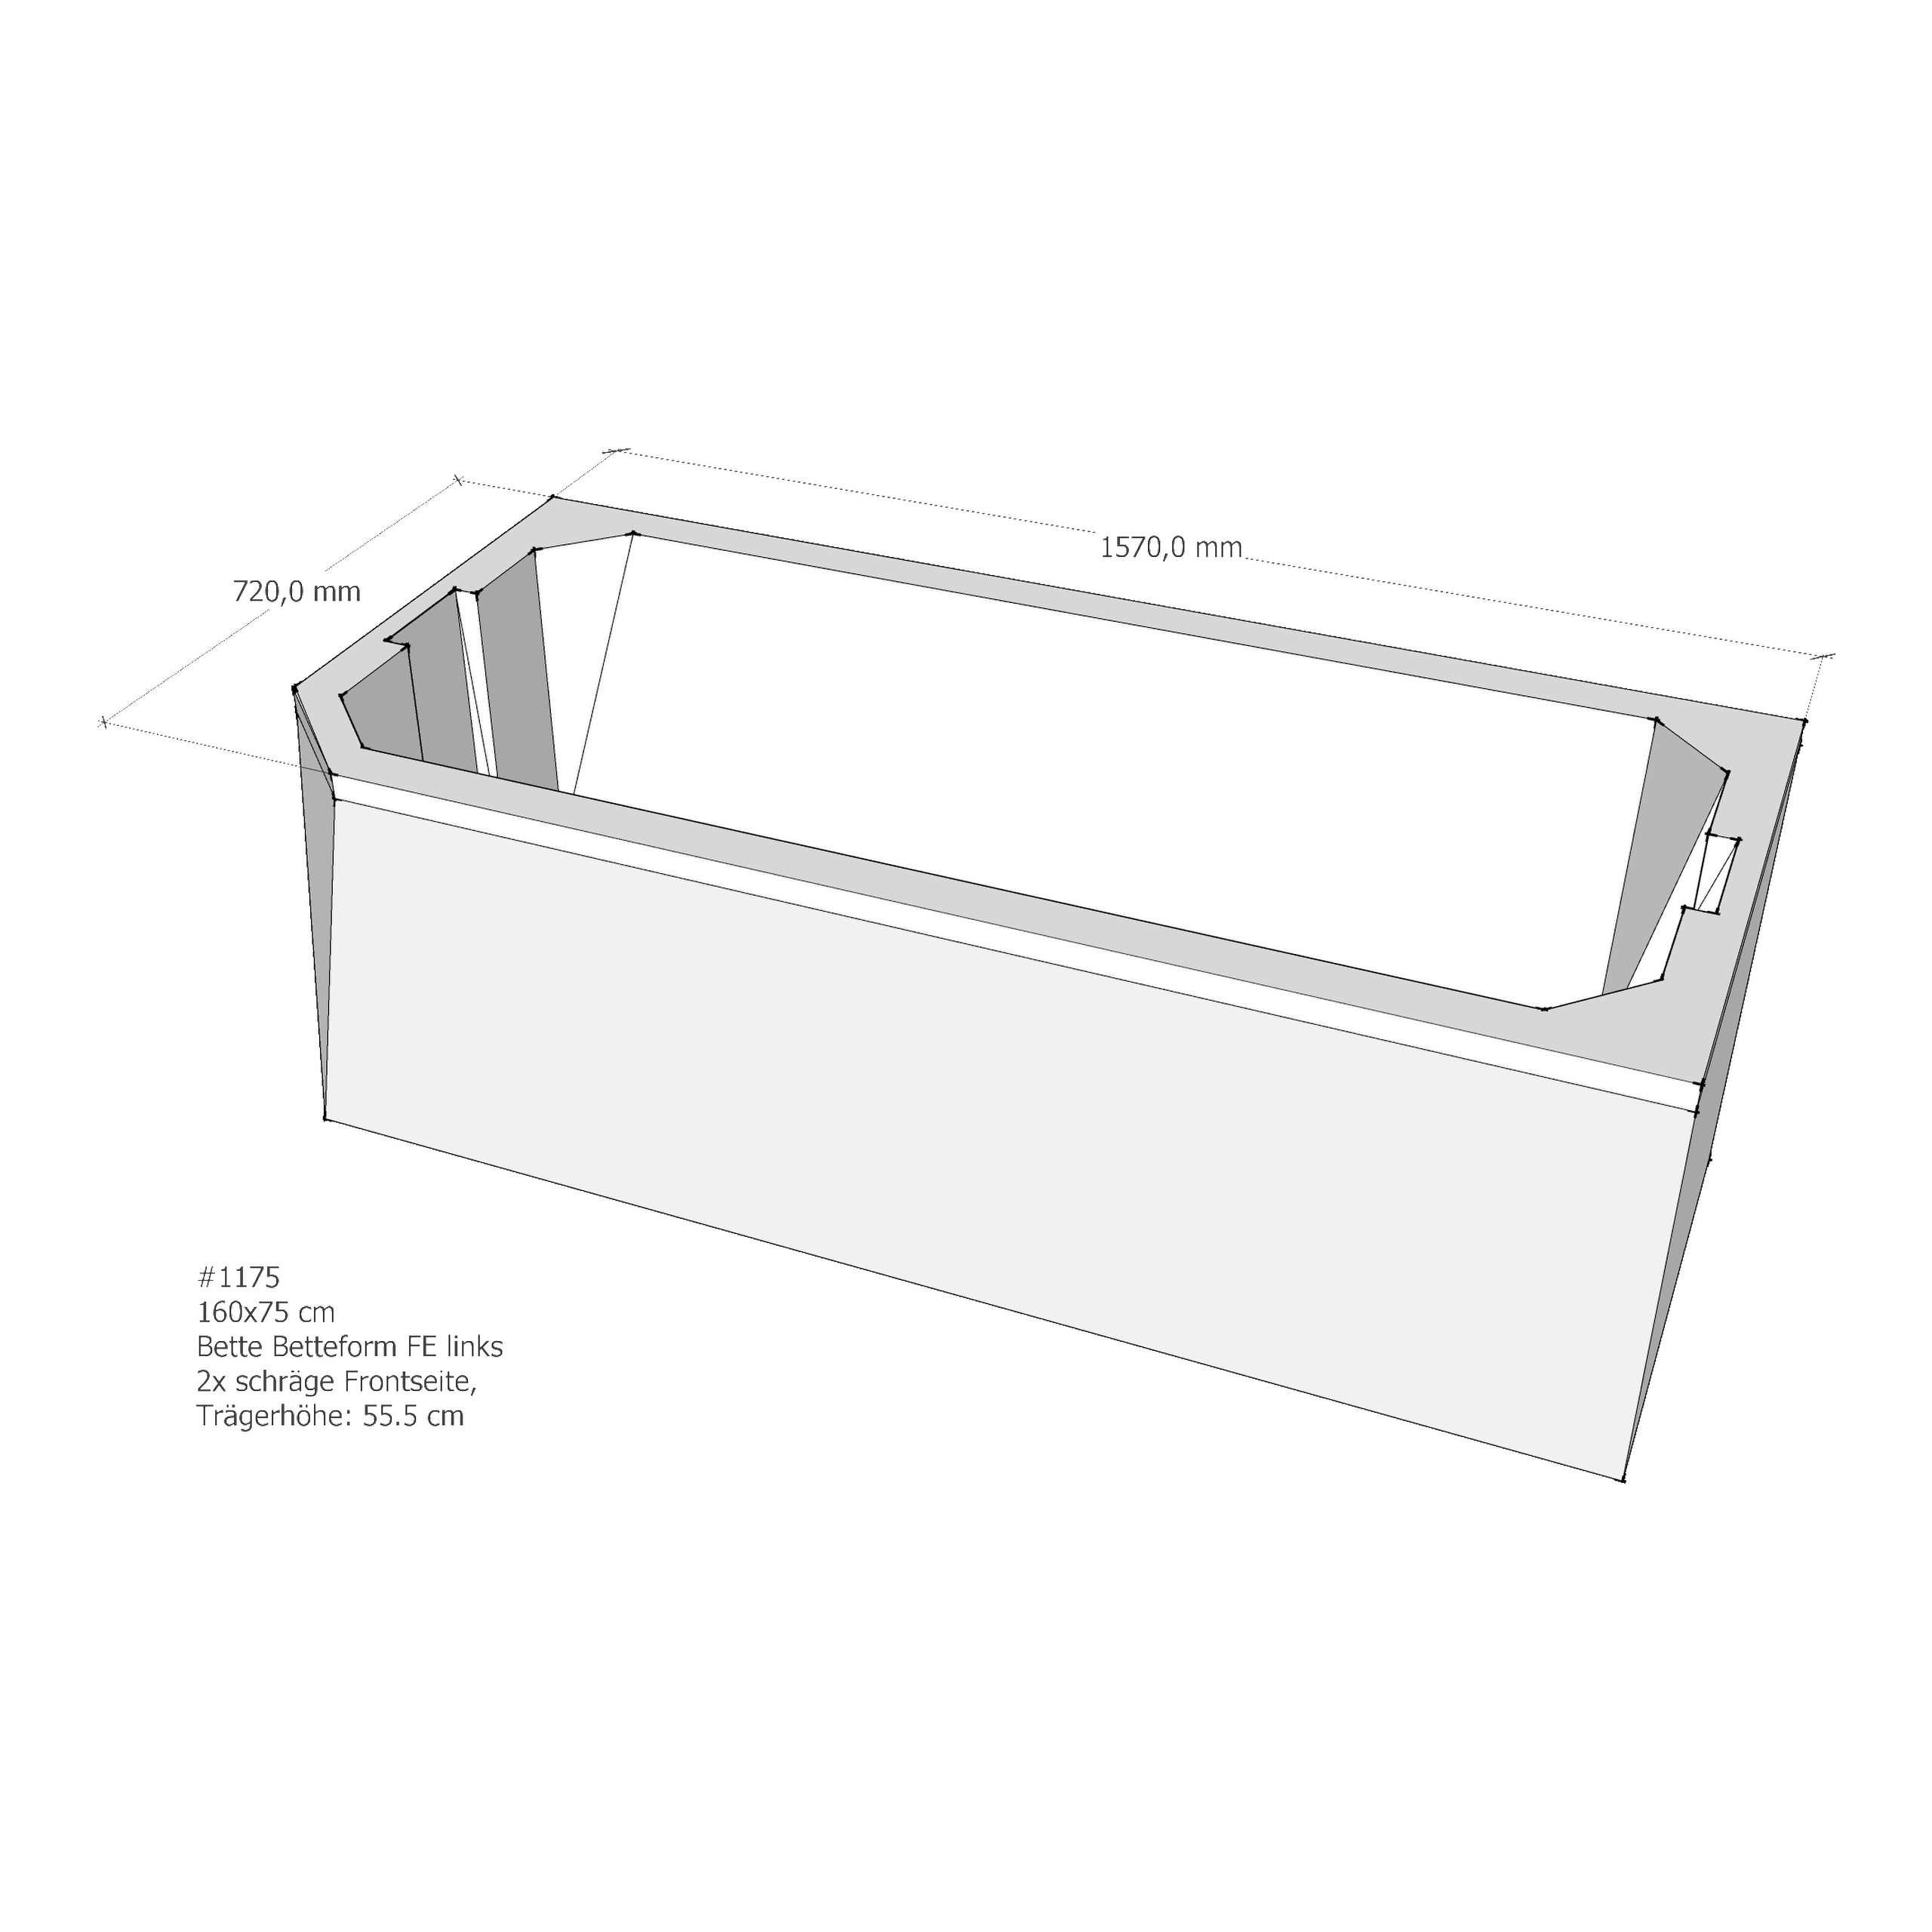 Badewannenträger für Bette BetteProfi-Form FE links 160 × 75 × 42 cm